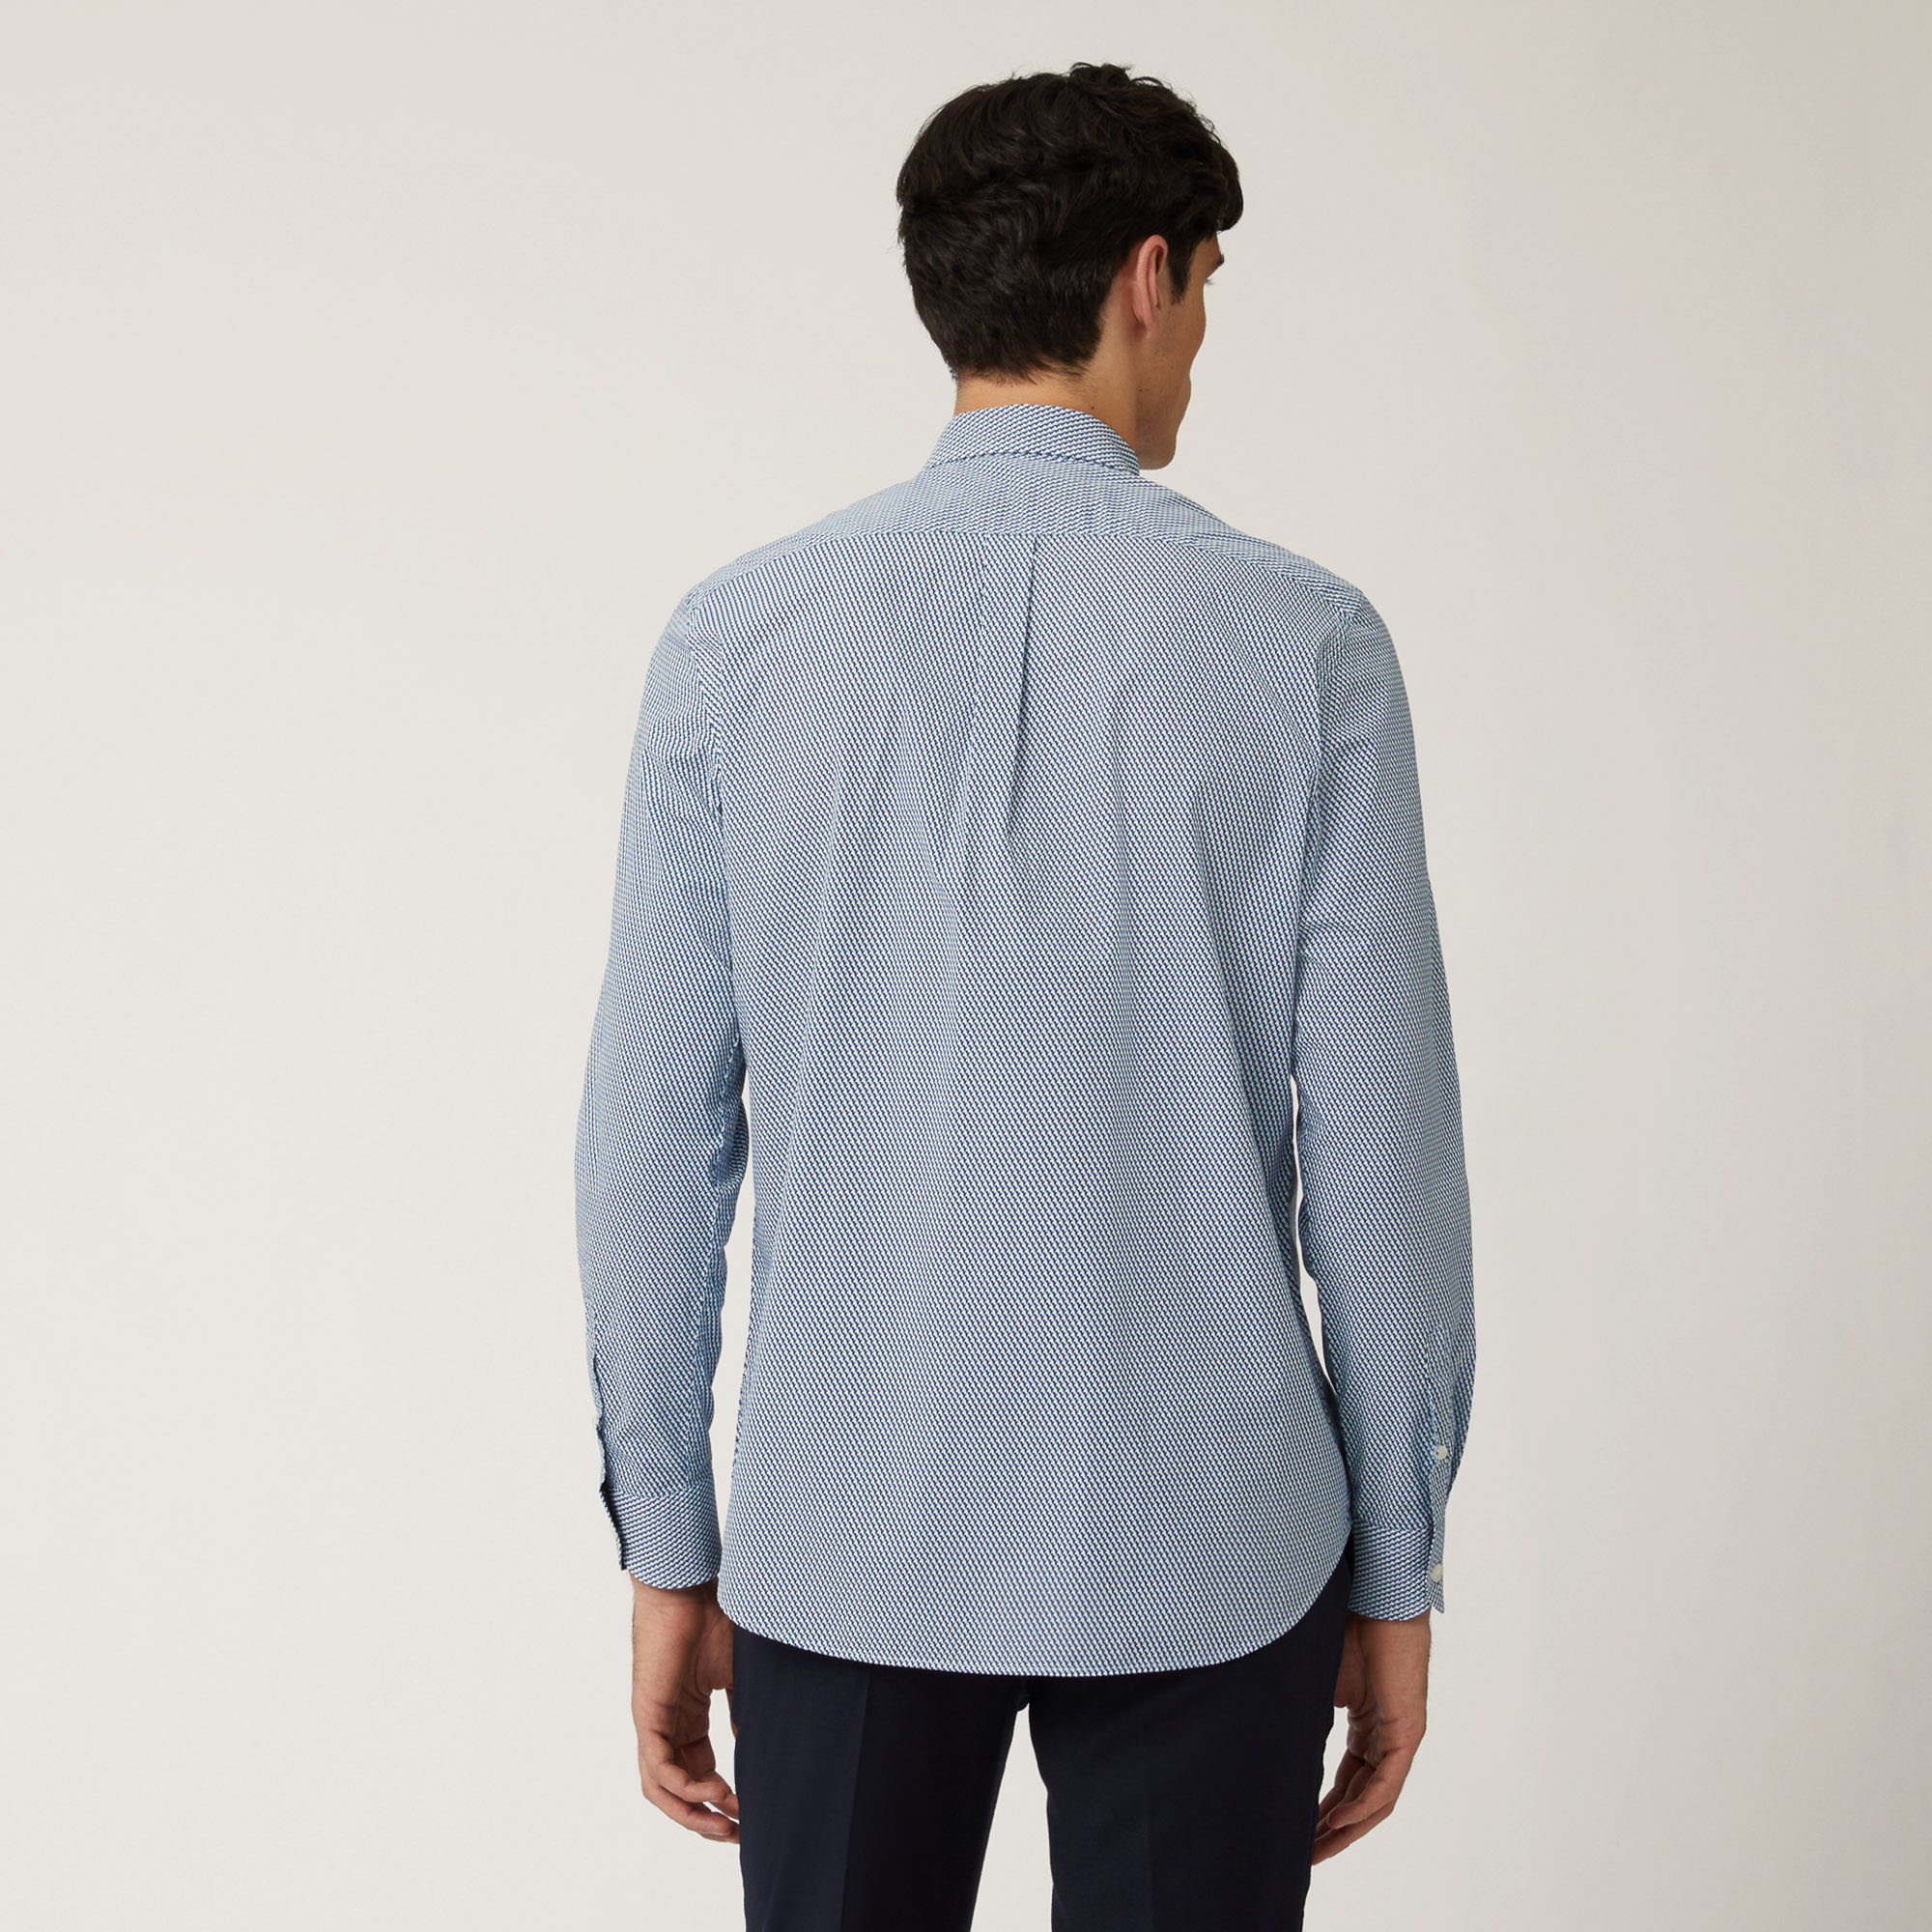 Camicia In Cotone Con Micromotivo, Blu, large